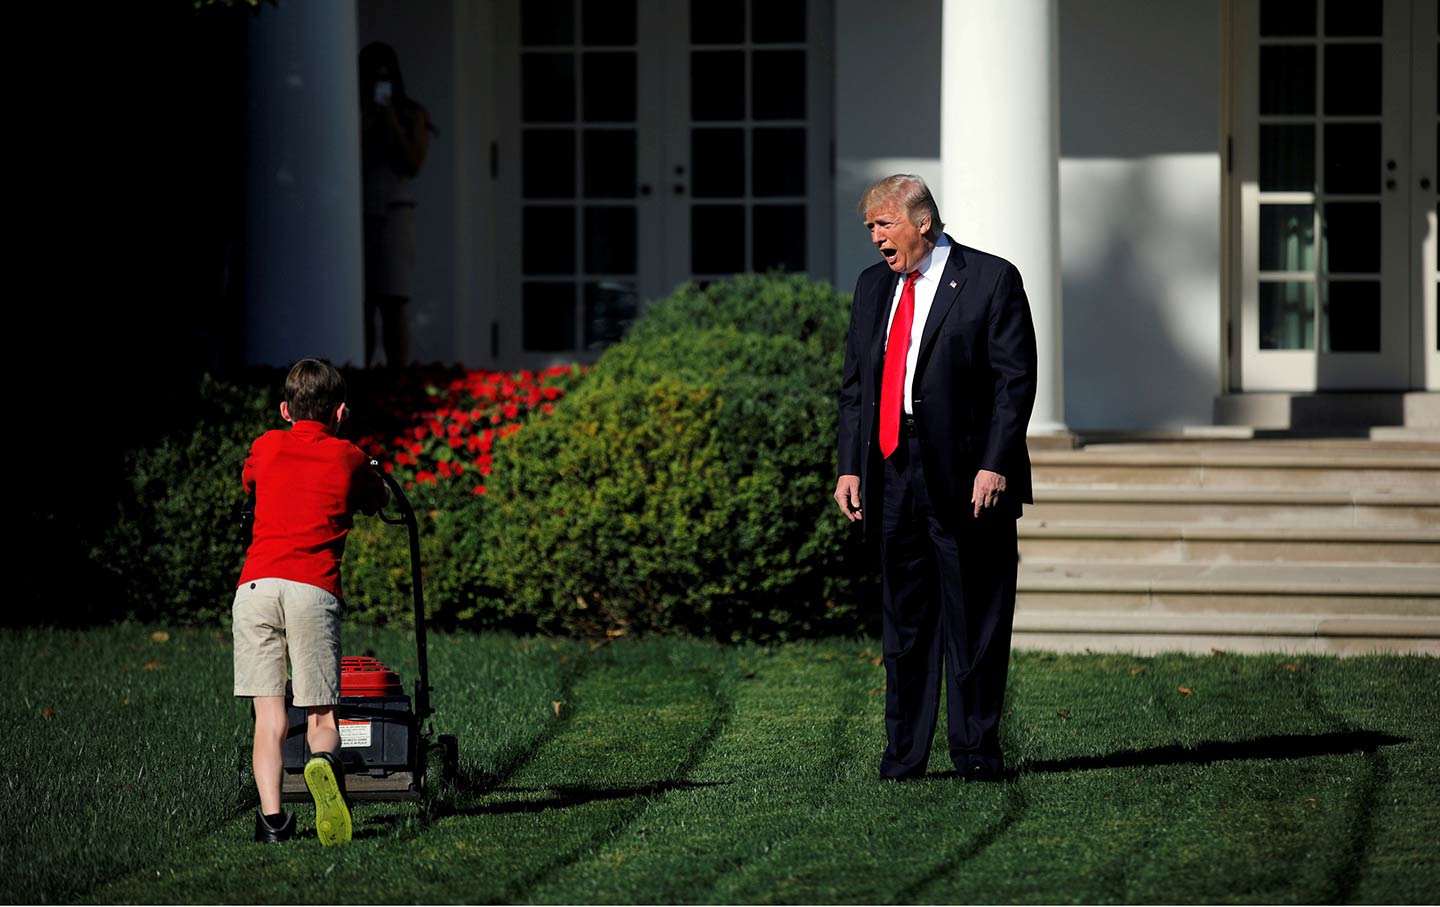 Donald Trump shouting at 11-year-old boy